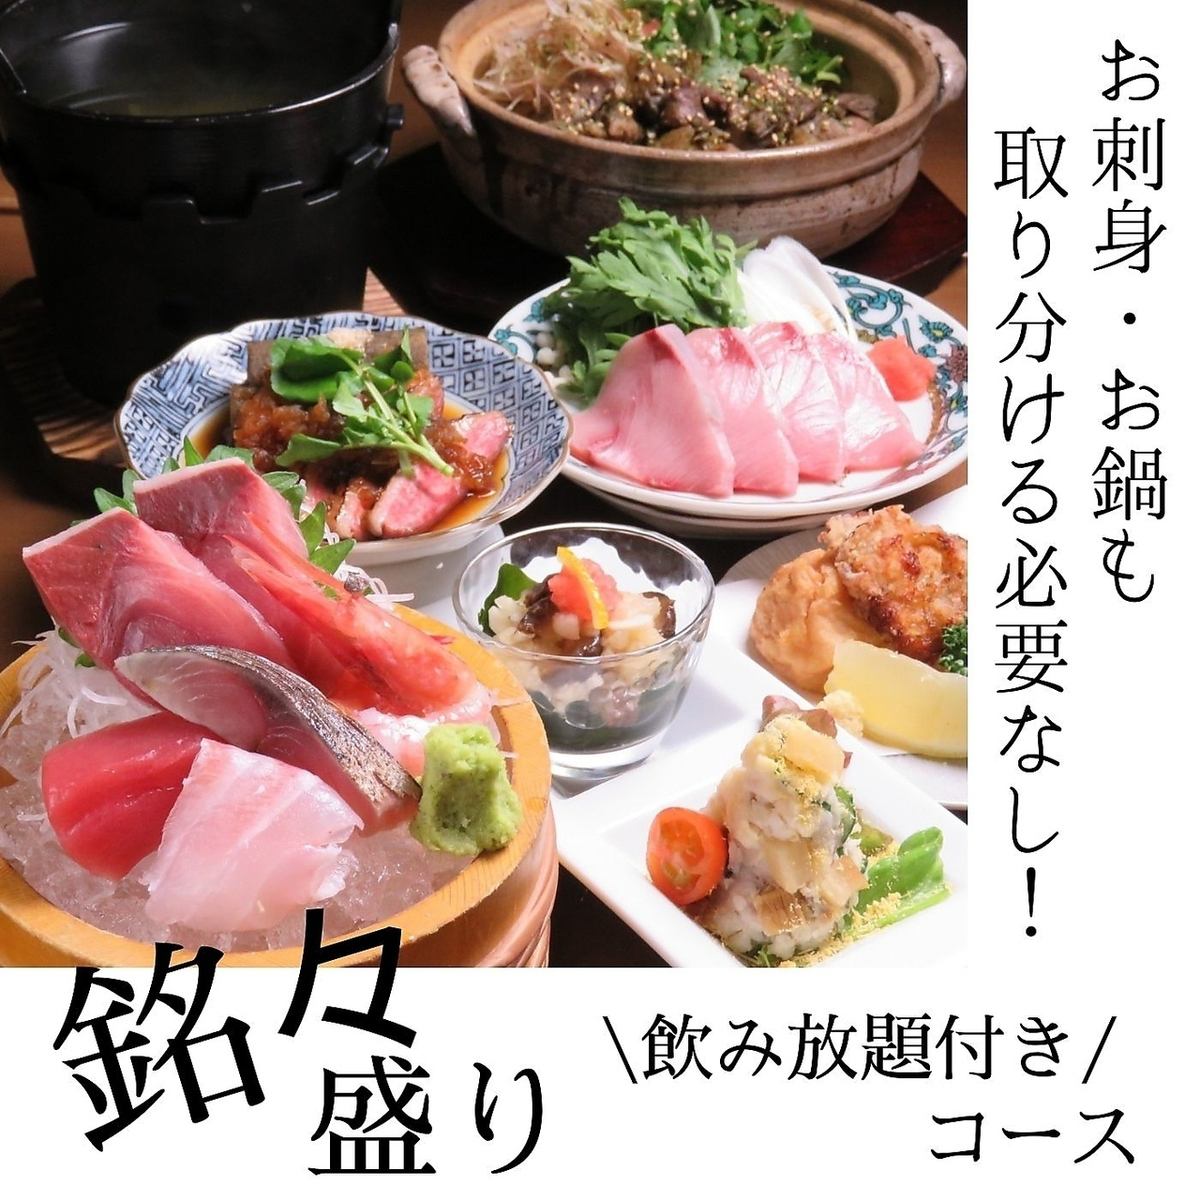 6,000日圓起的無限暢飲套餐，讓您盡情享受北陸美食。